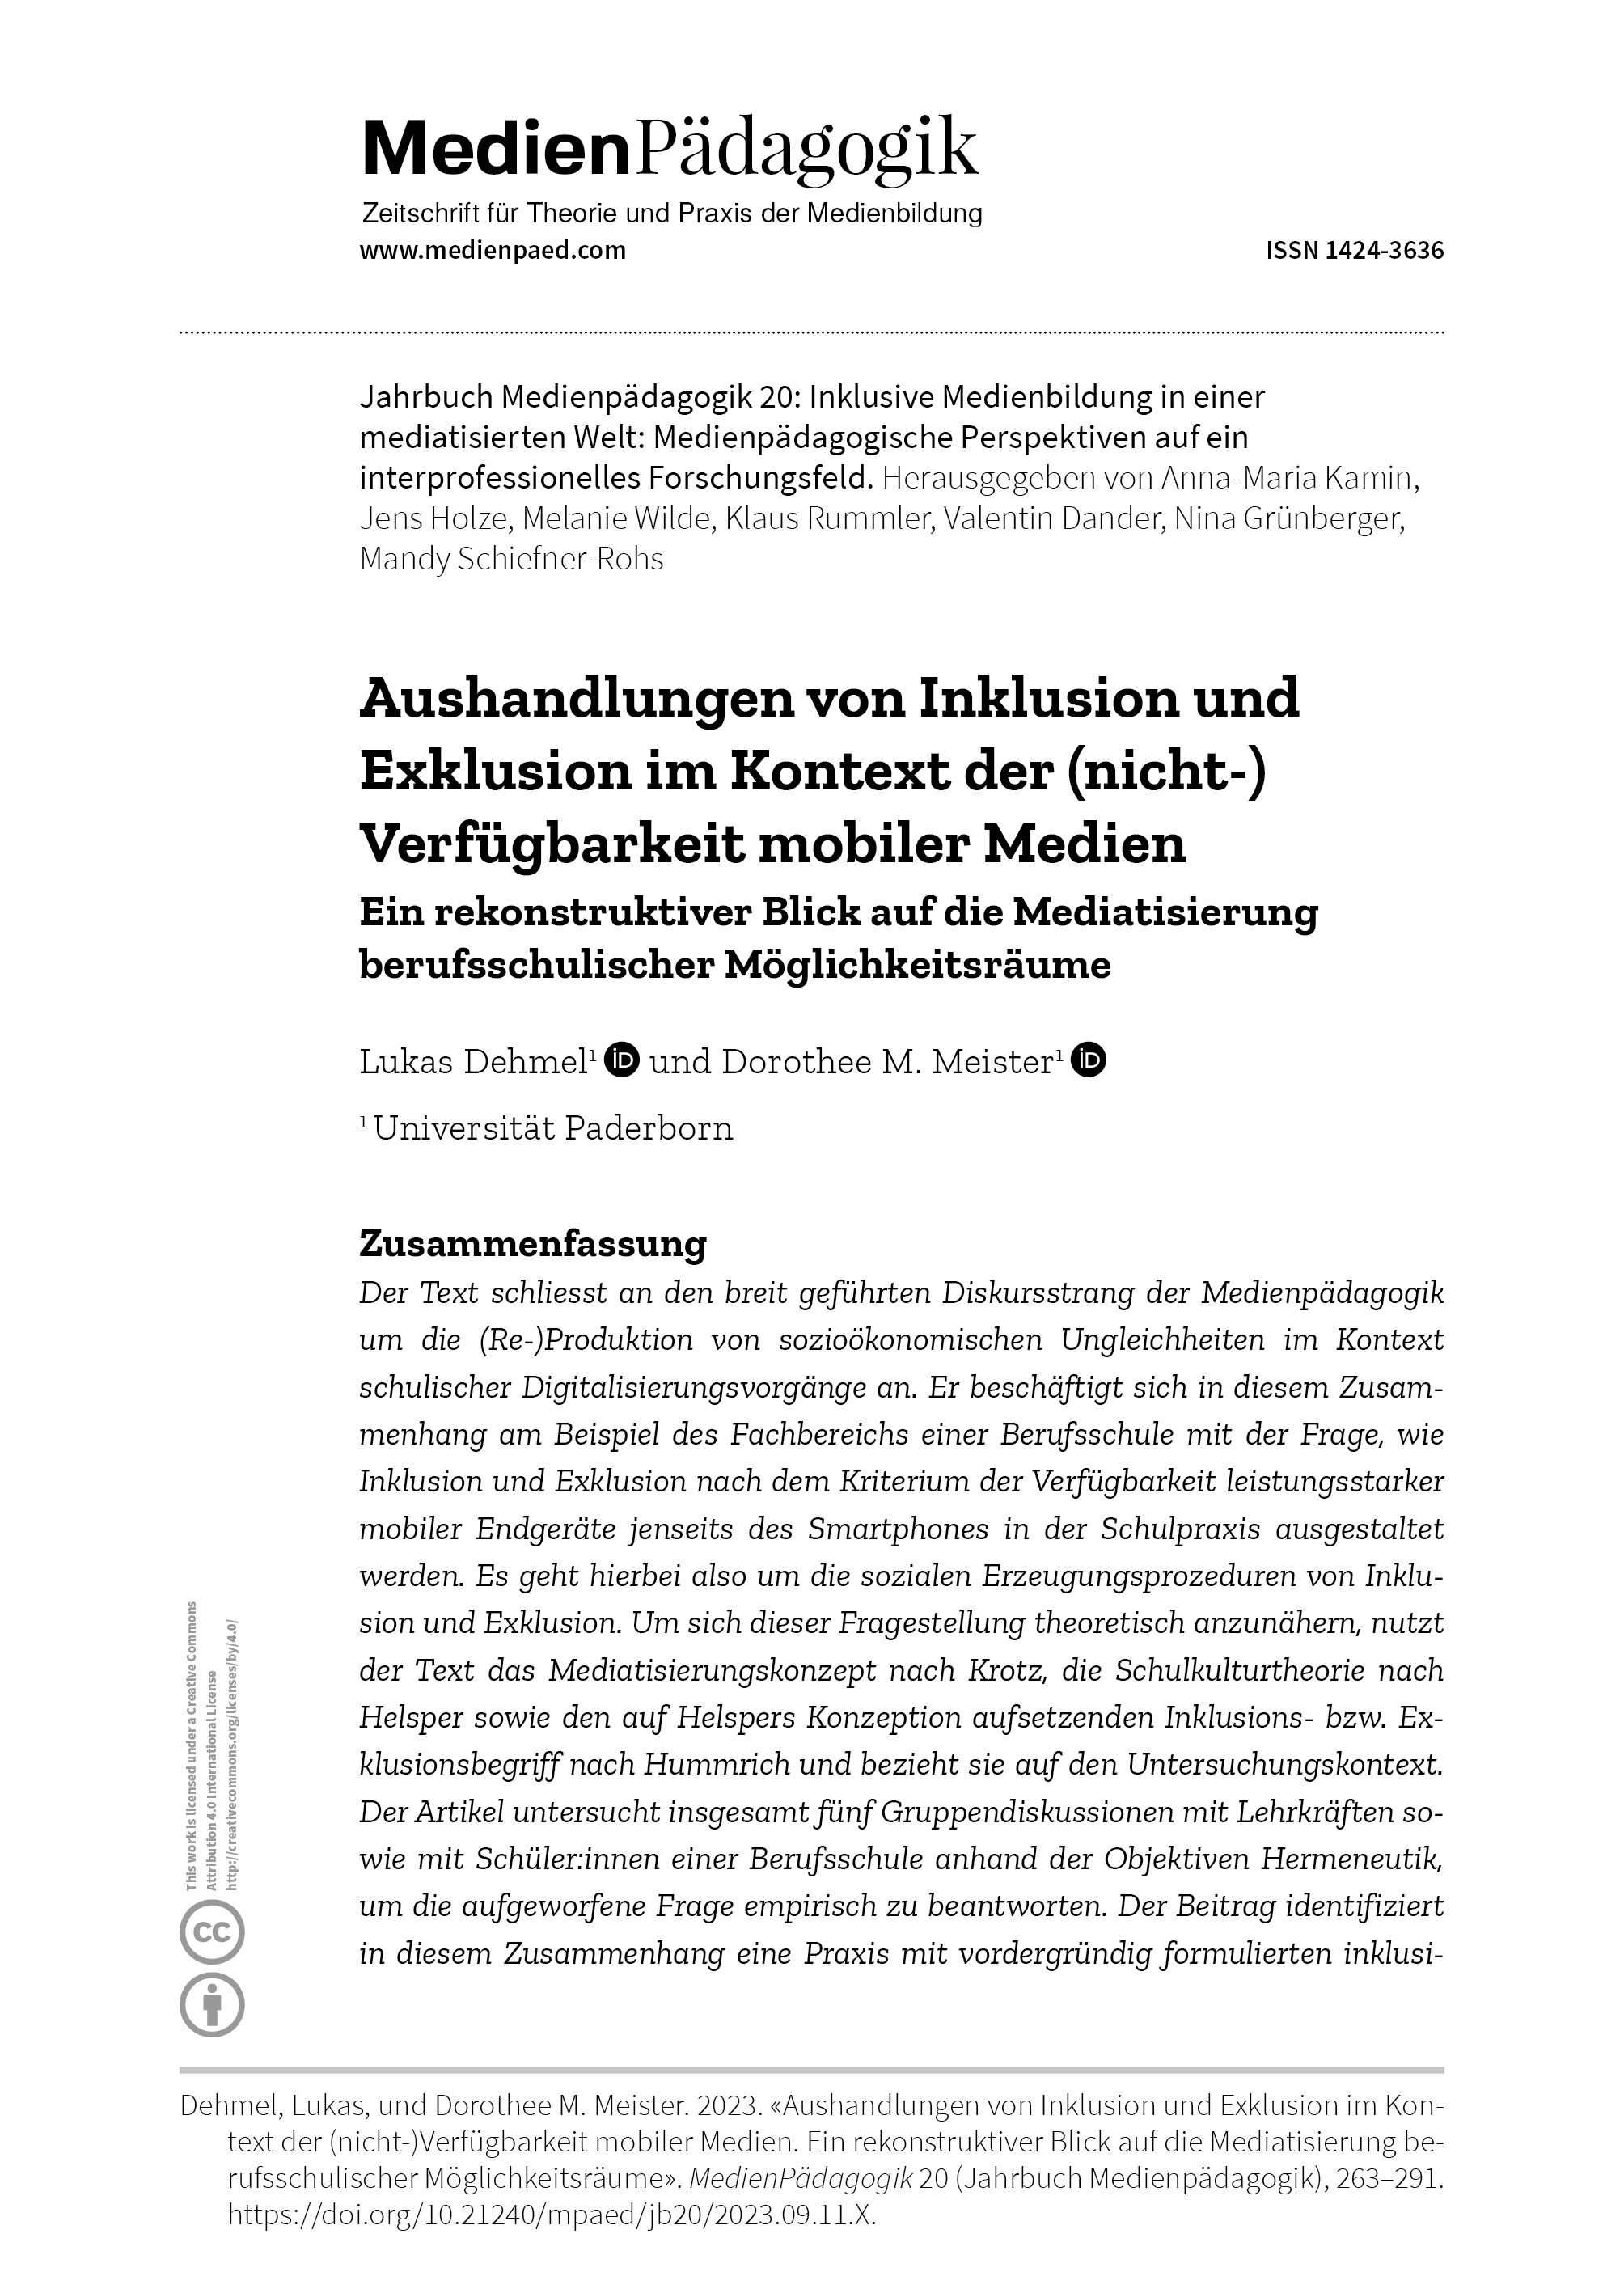 Cover:: Lukas Dehmel, Dorothee M. Meister: Aushandlungen von Inklusion und Exklusion im Kontext der (nicht-)Verfügbarkeit mobiler Medien: Ein rekonstruktiver Blick auf die Mediatisierung berufsschulischer Möglichkeitsräume